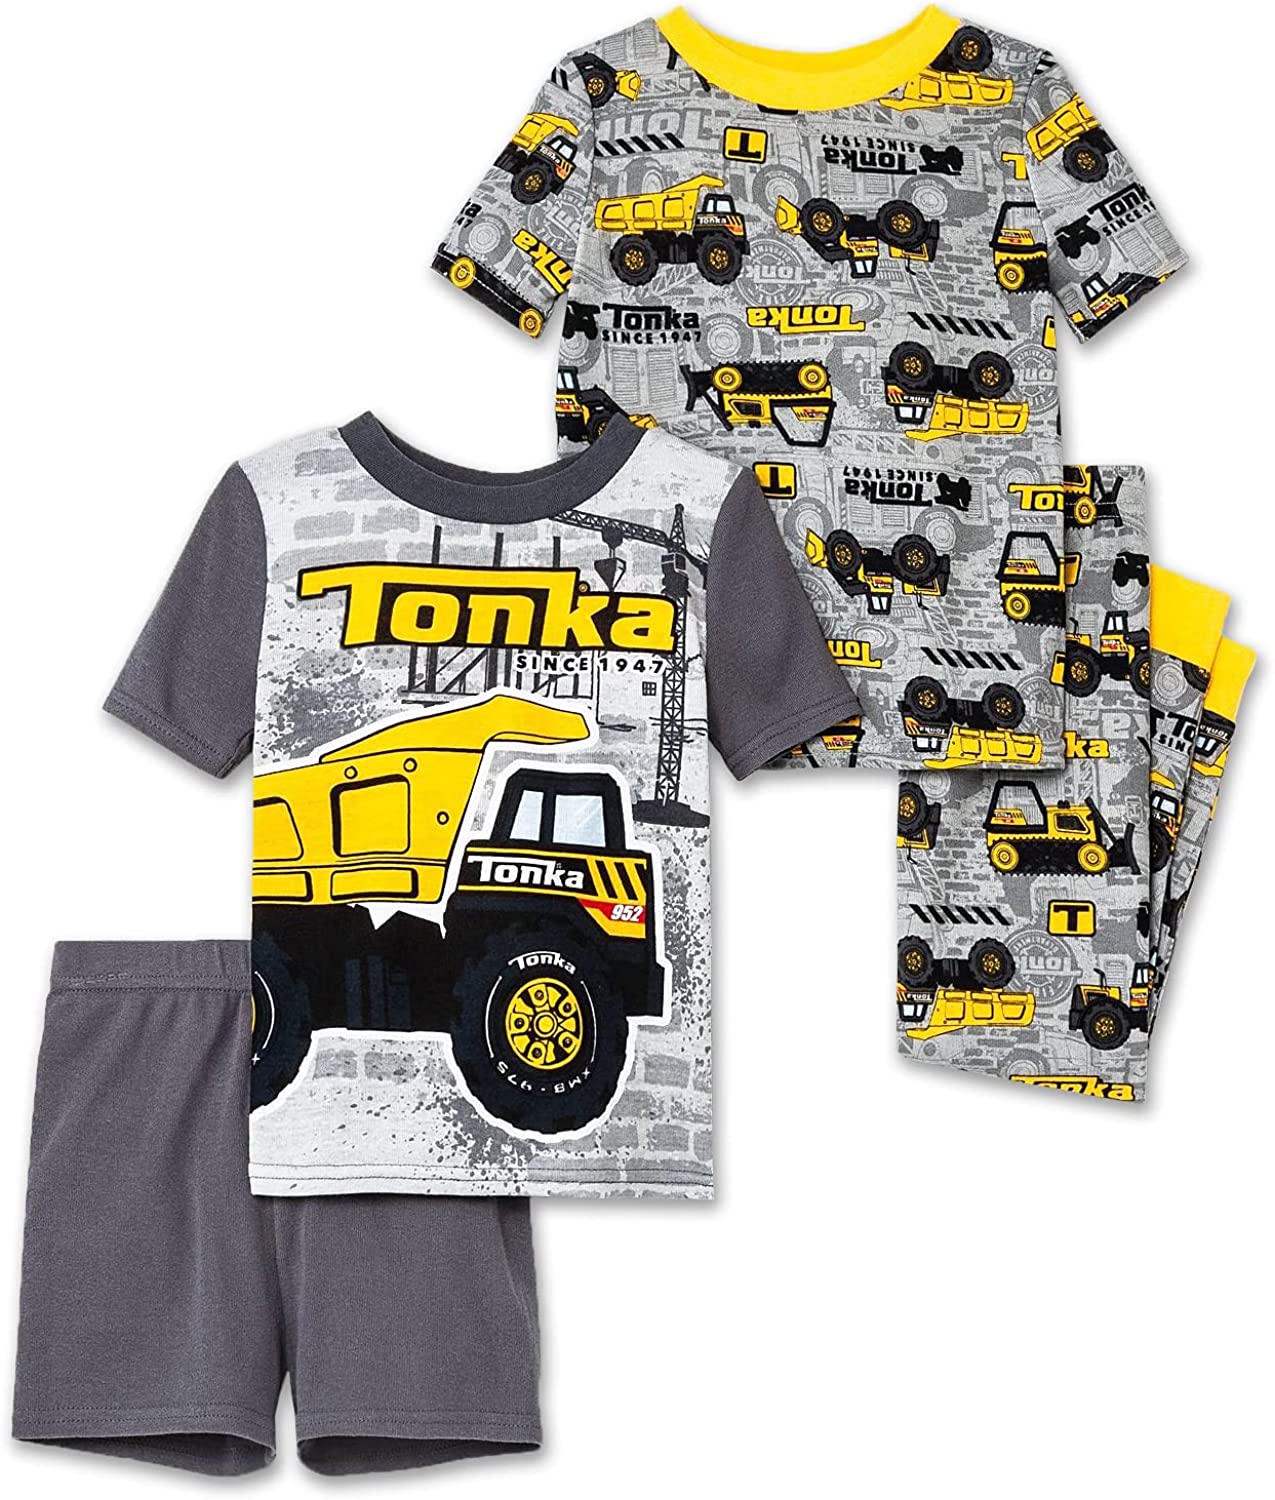 Tonka Truck Toddler 4 Piece Pajamas